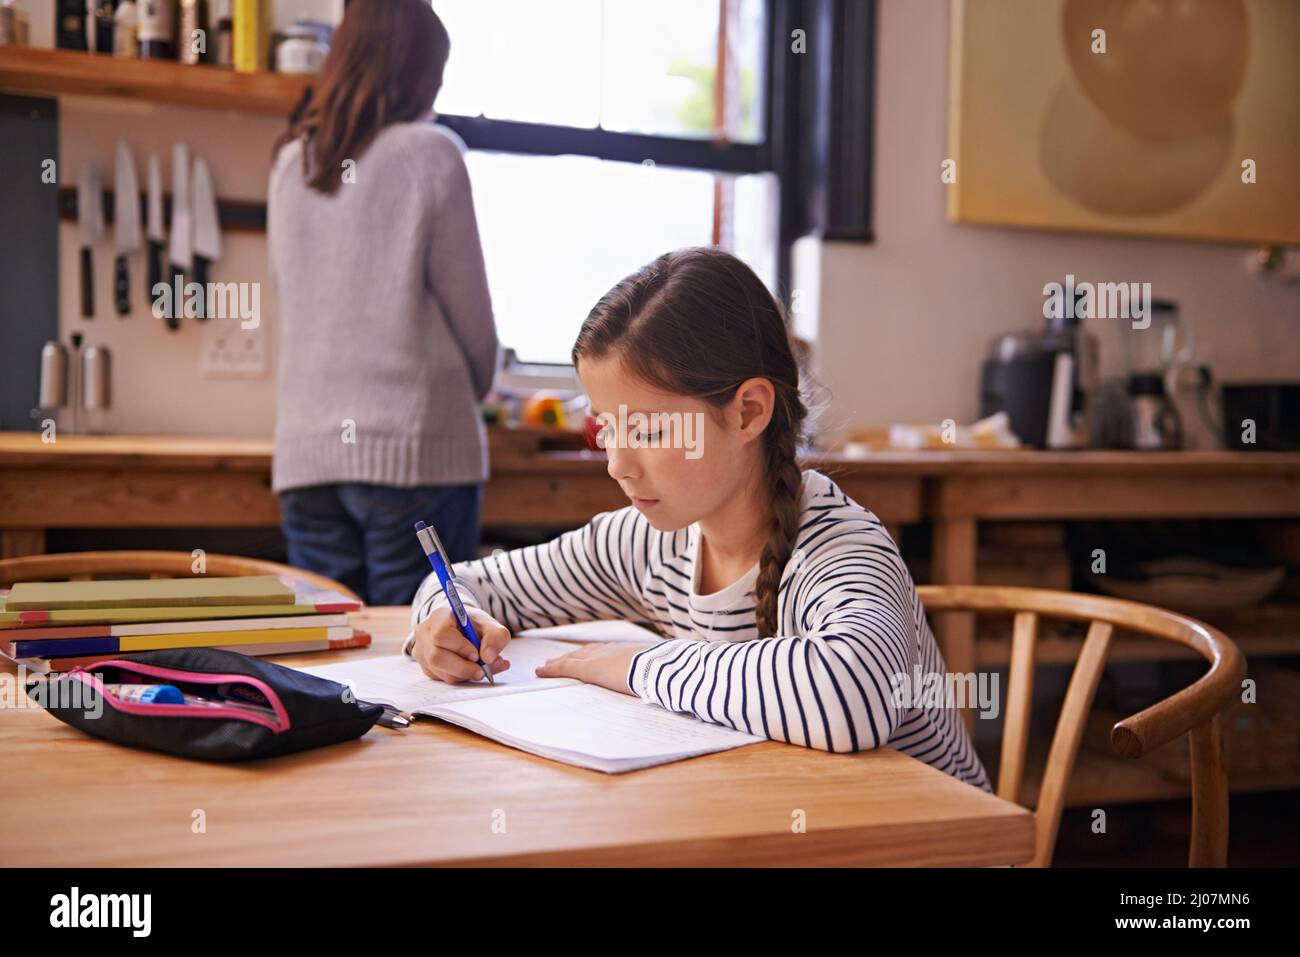 Shes haut de sa classe pour une raison. Une jeune fille occupée faisant ses devoirs à la table de cuisine. Banque D'Images